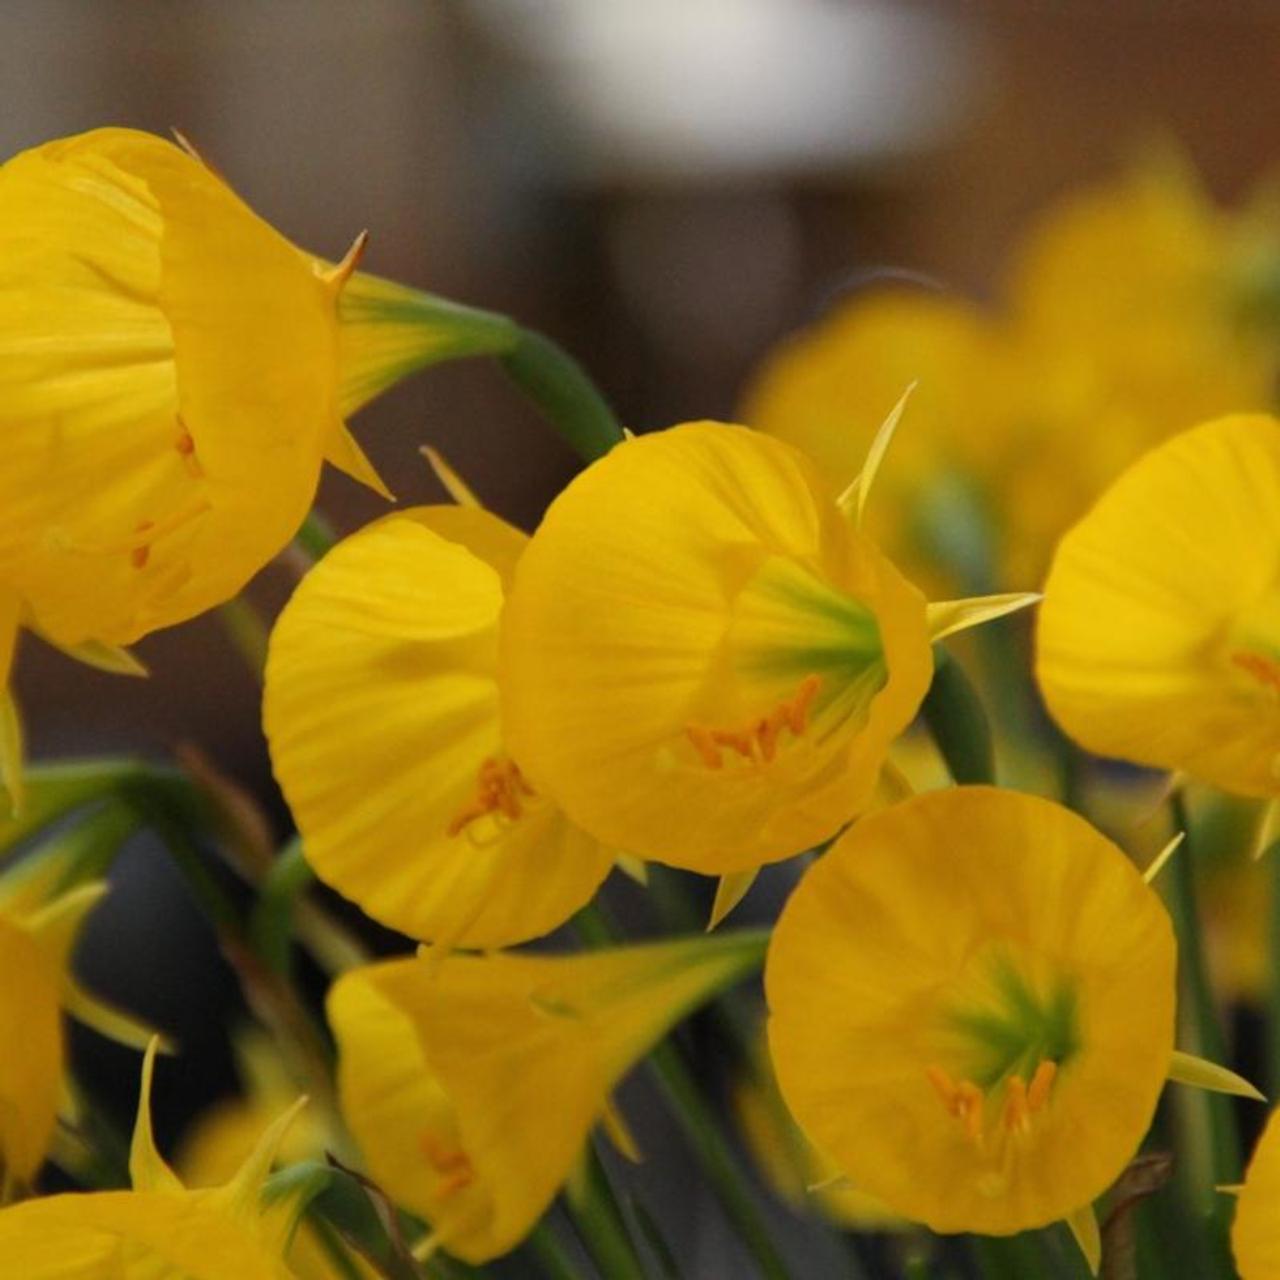 Narcissus bulbocodium 'Oxford Gold' plant